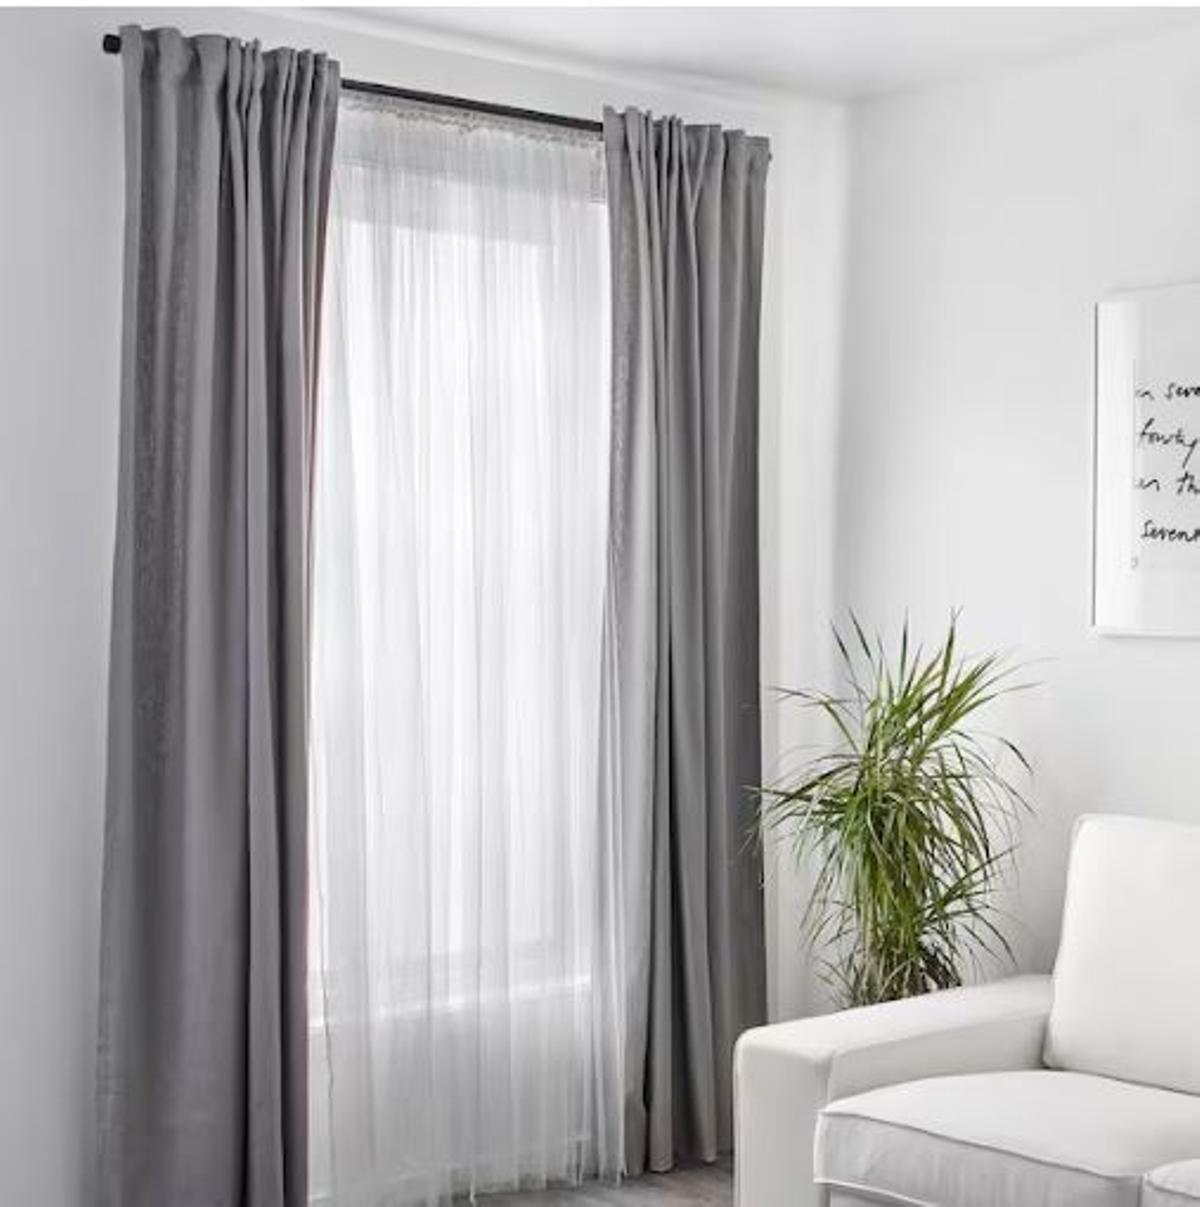 Las cortinas de Ikea para mantener los mosquitos alejados de casa.